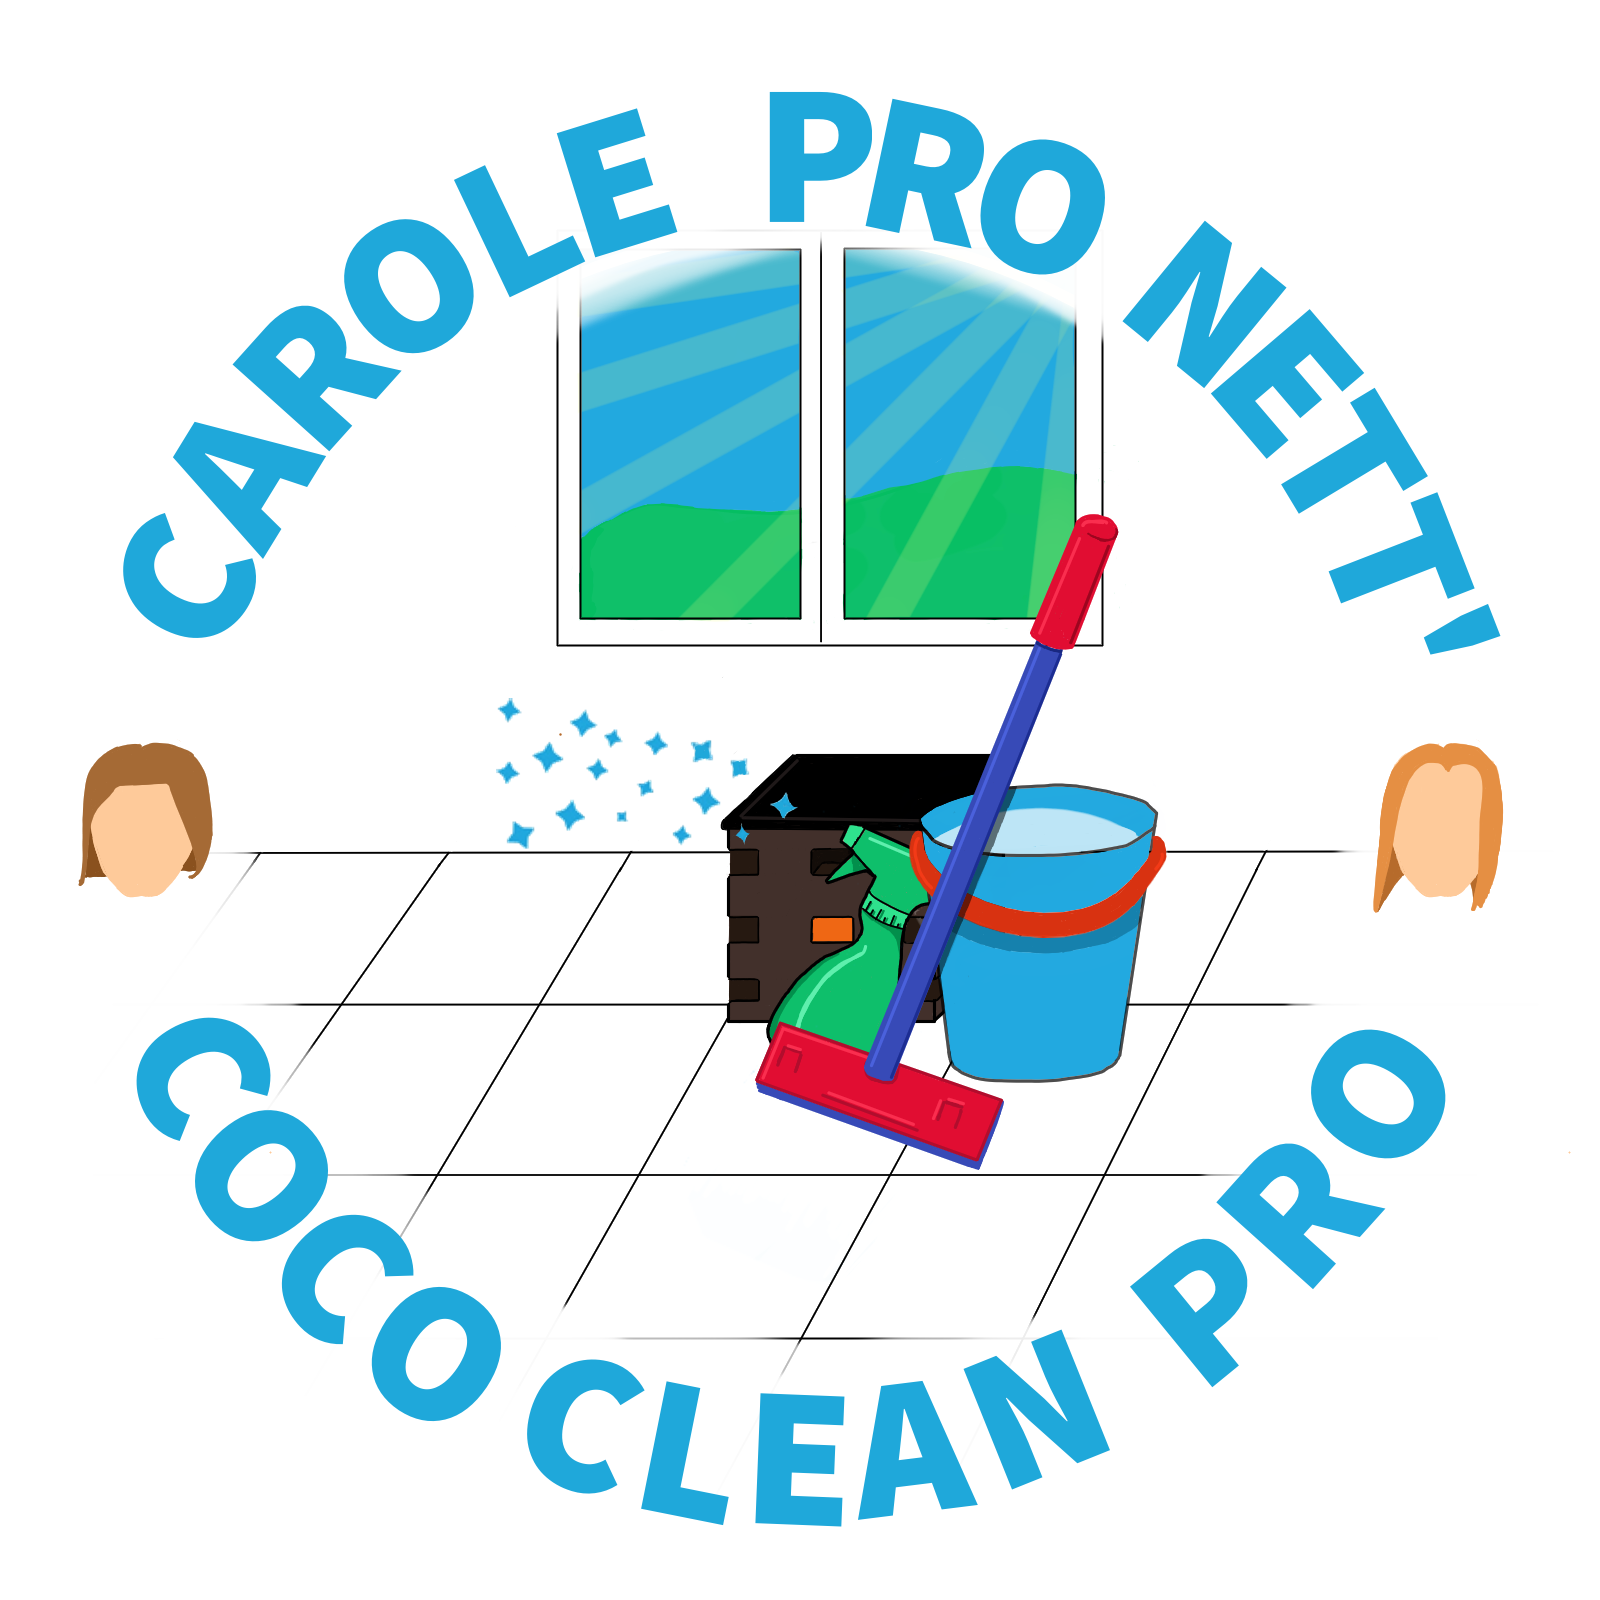 Carole Pro Nett' & Coco Clean Pro - Entreprise individuelle de nettoyage